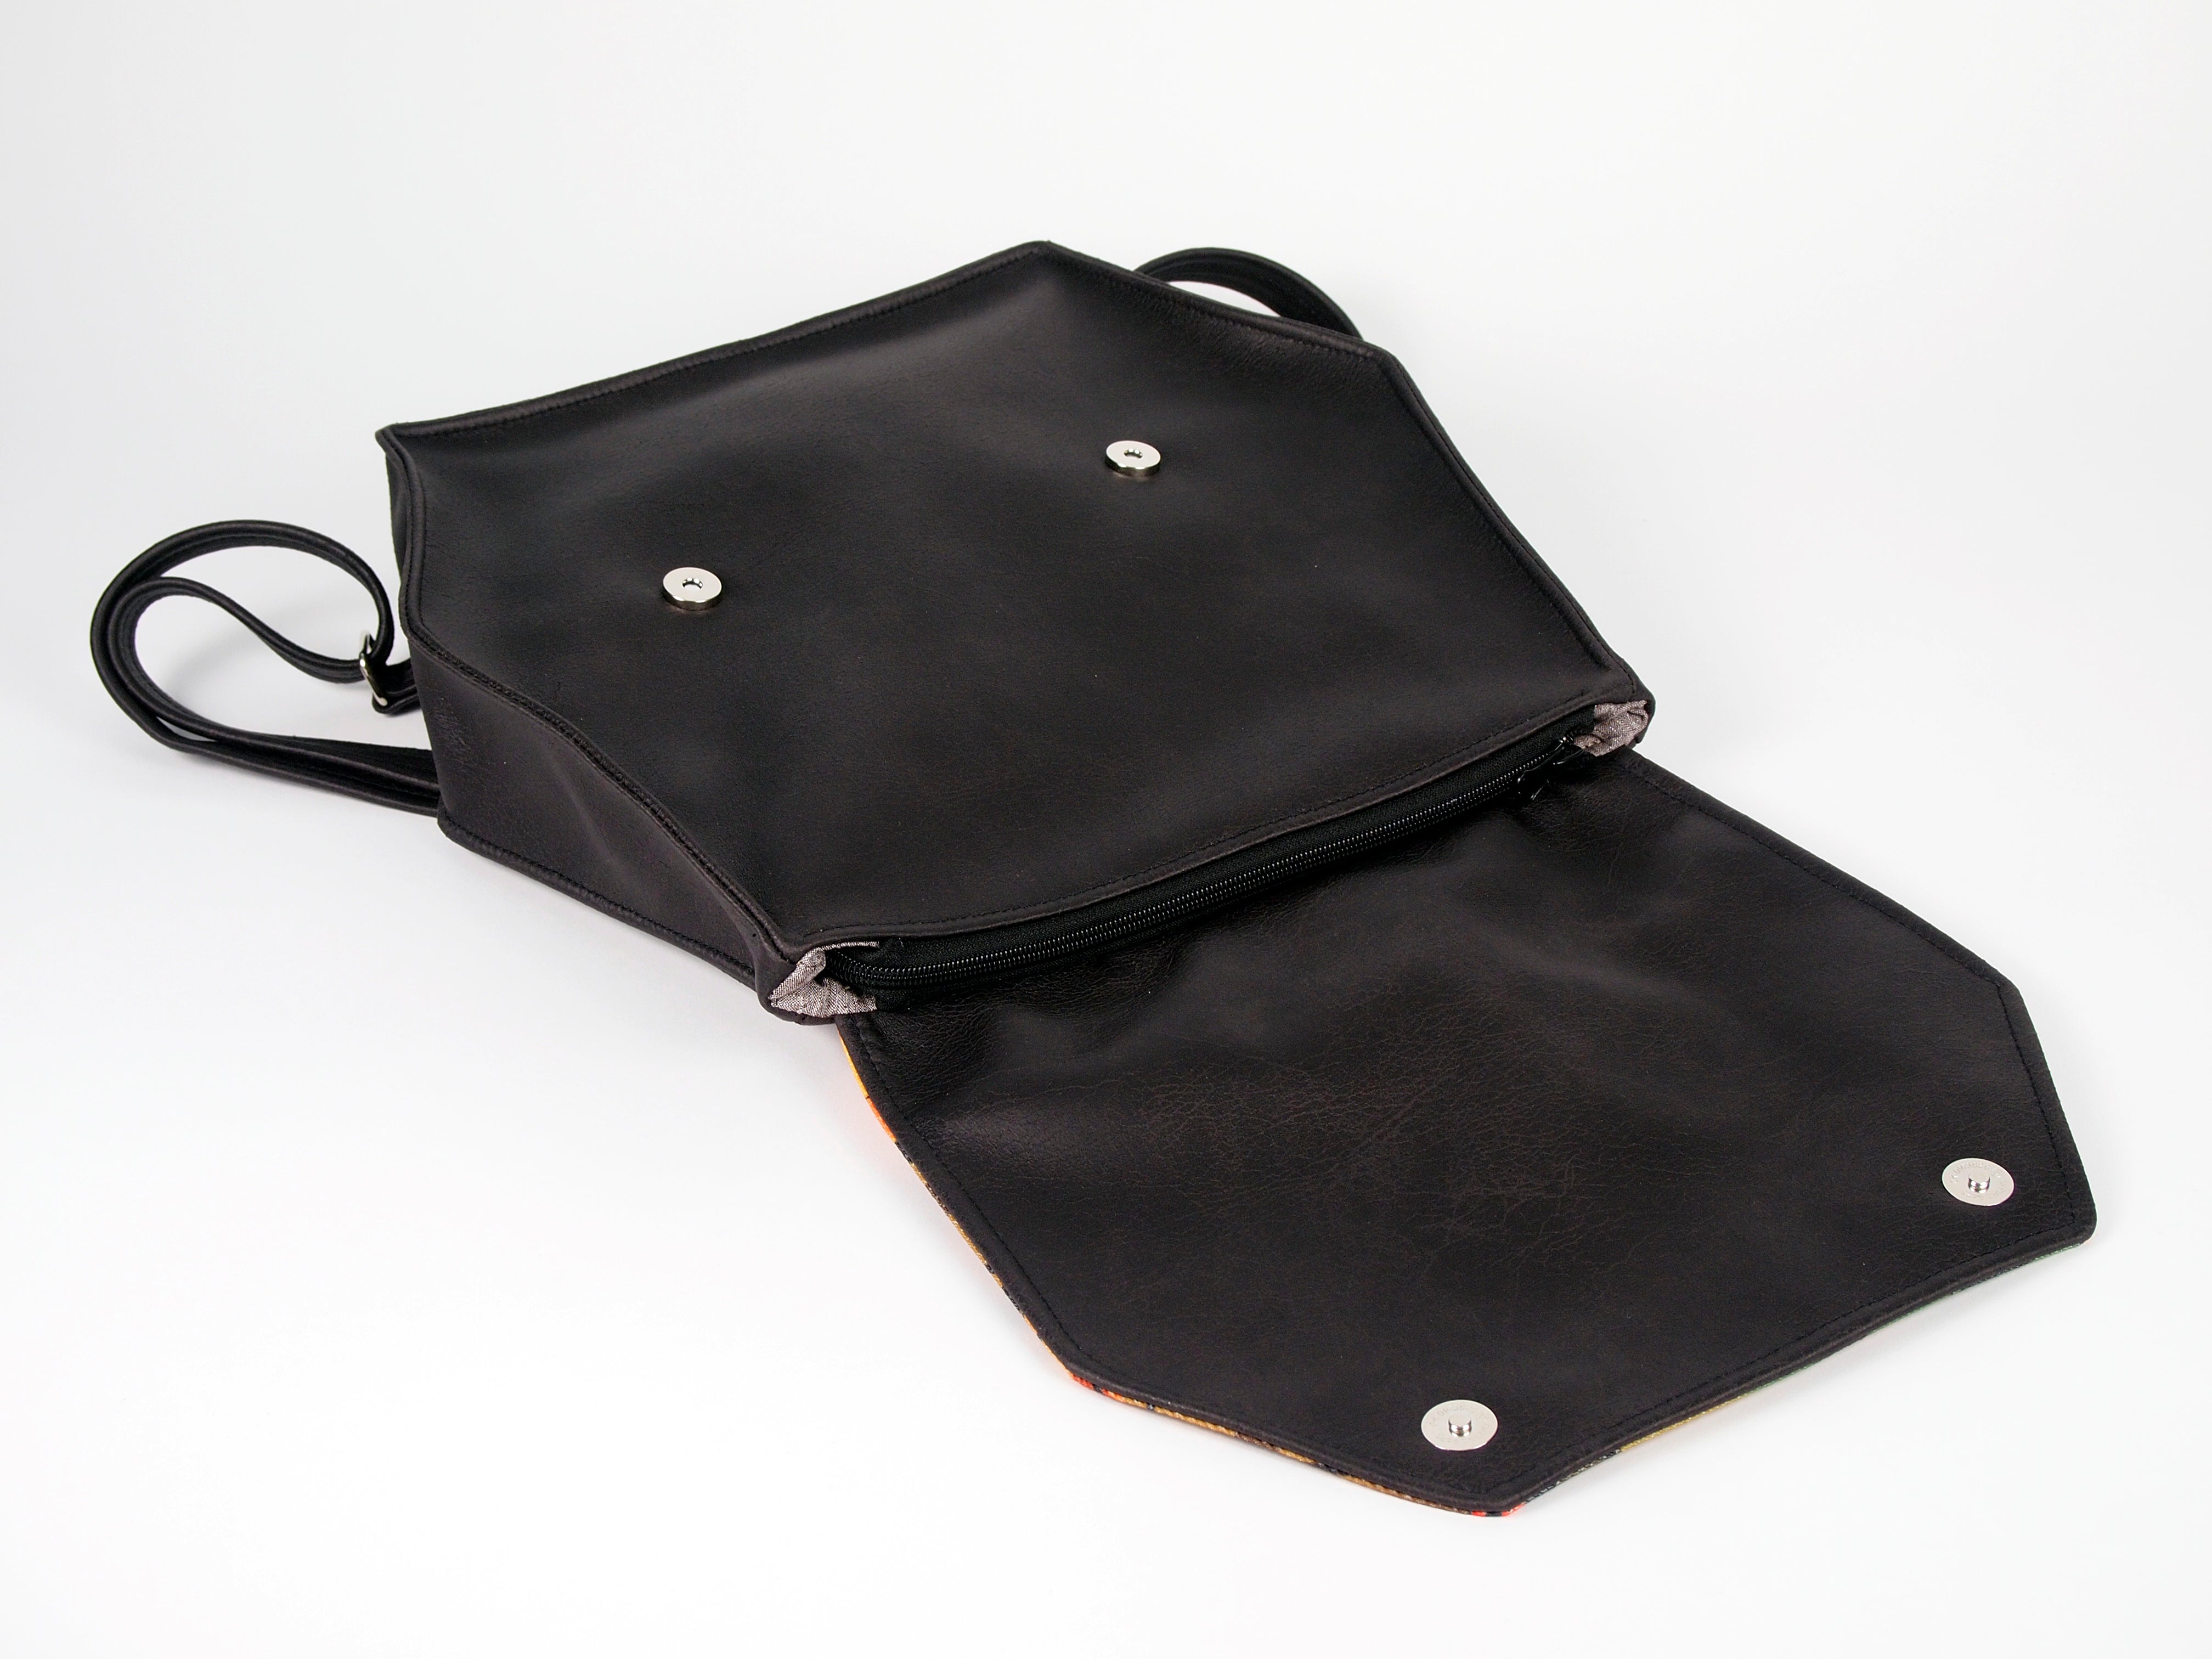 Bardo backpack torero - Frozen leaves - Premium  from BARDO ART WORKS - Just lv82.00! Shop now at BARDO ART WORKS